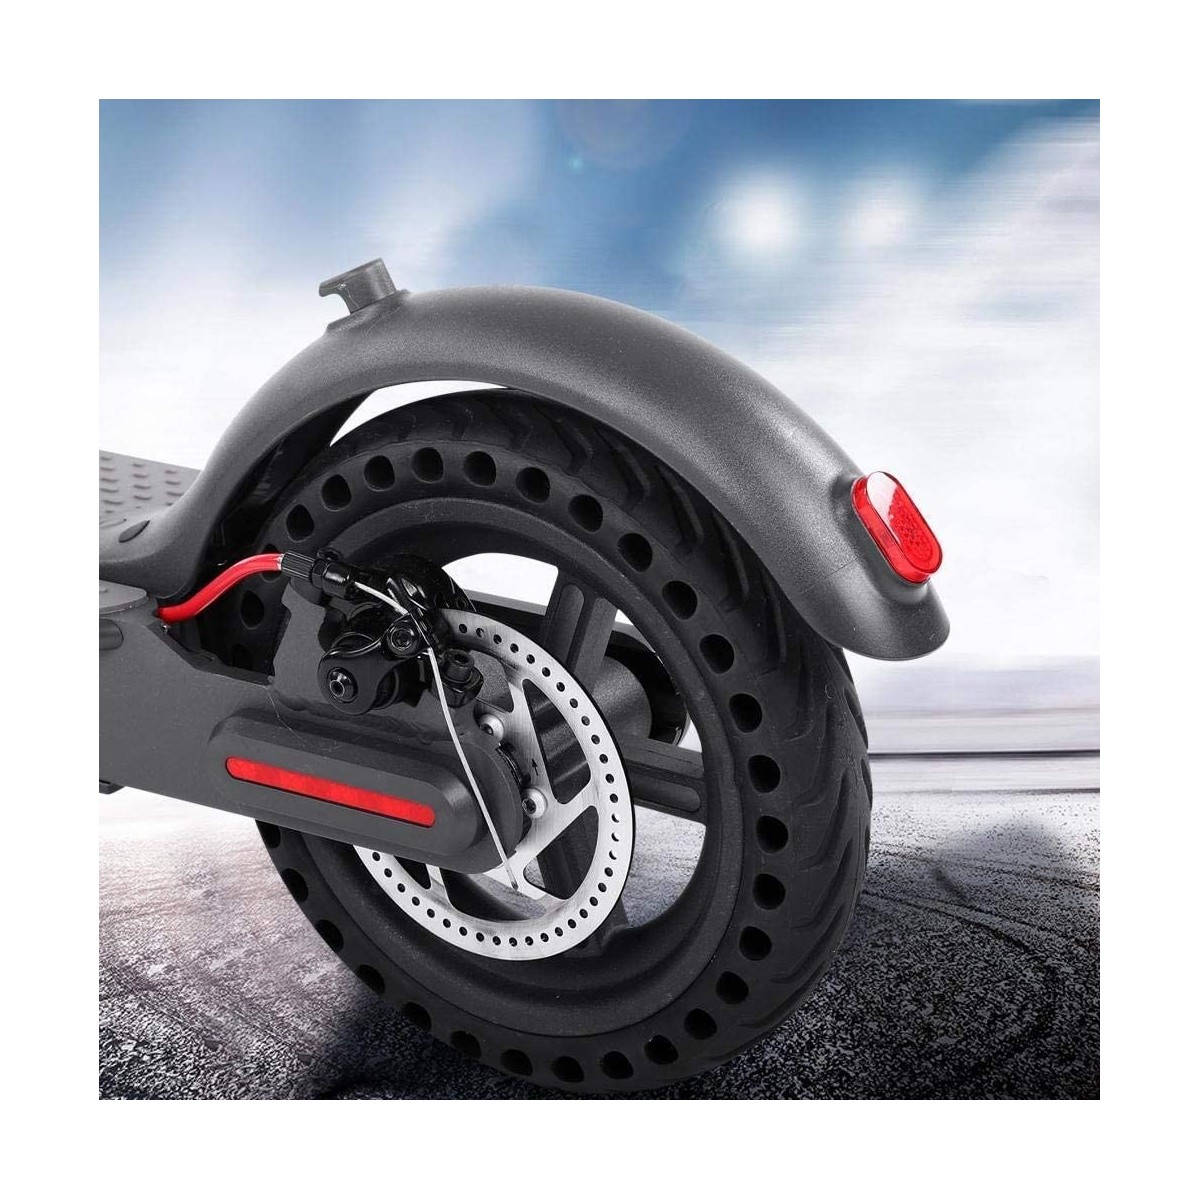 2 Pneus pour Xiaomi Trottinette M365, M365 Pro, Roue Anti Crevaison Anti dérapant Increvable 8,5 Pouces + 2 démontes pneus